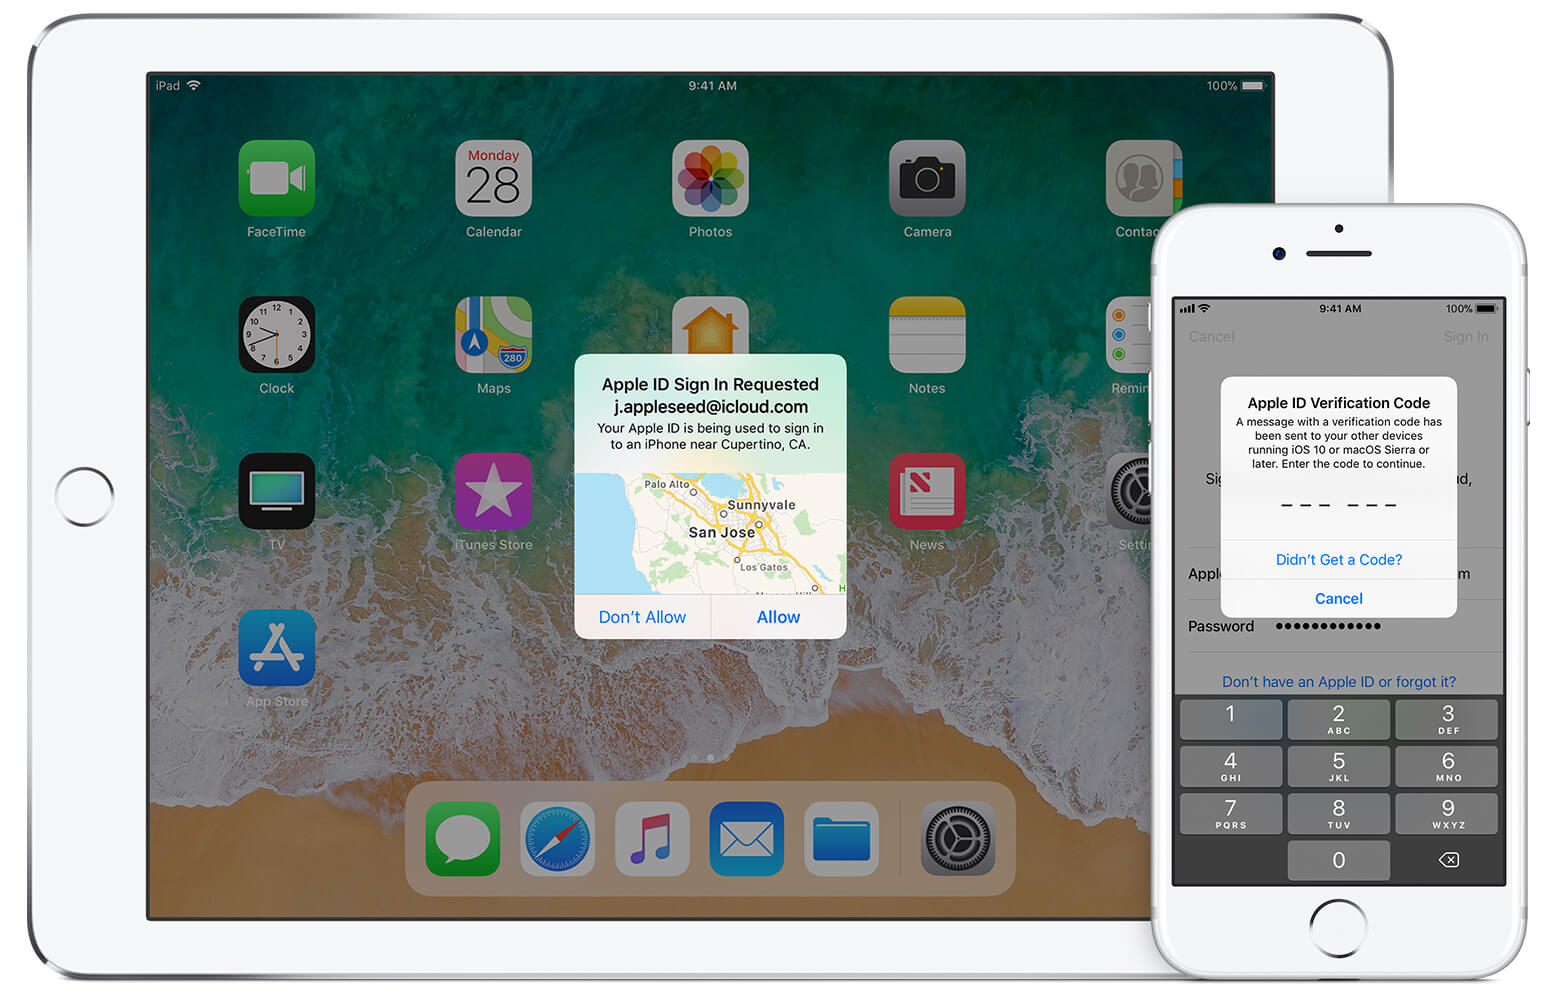 تجاوز رمز مرور iPhone مع معرف Apple